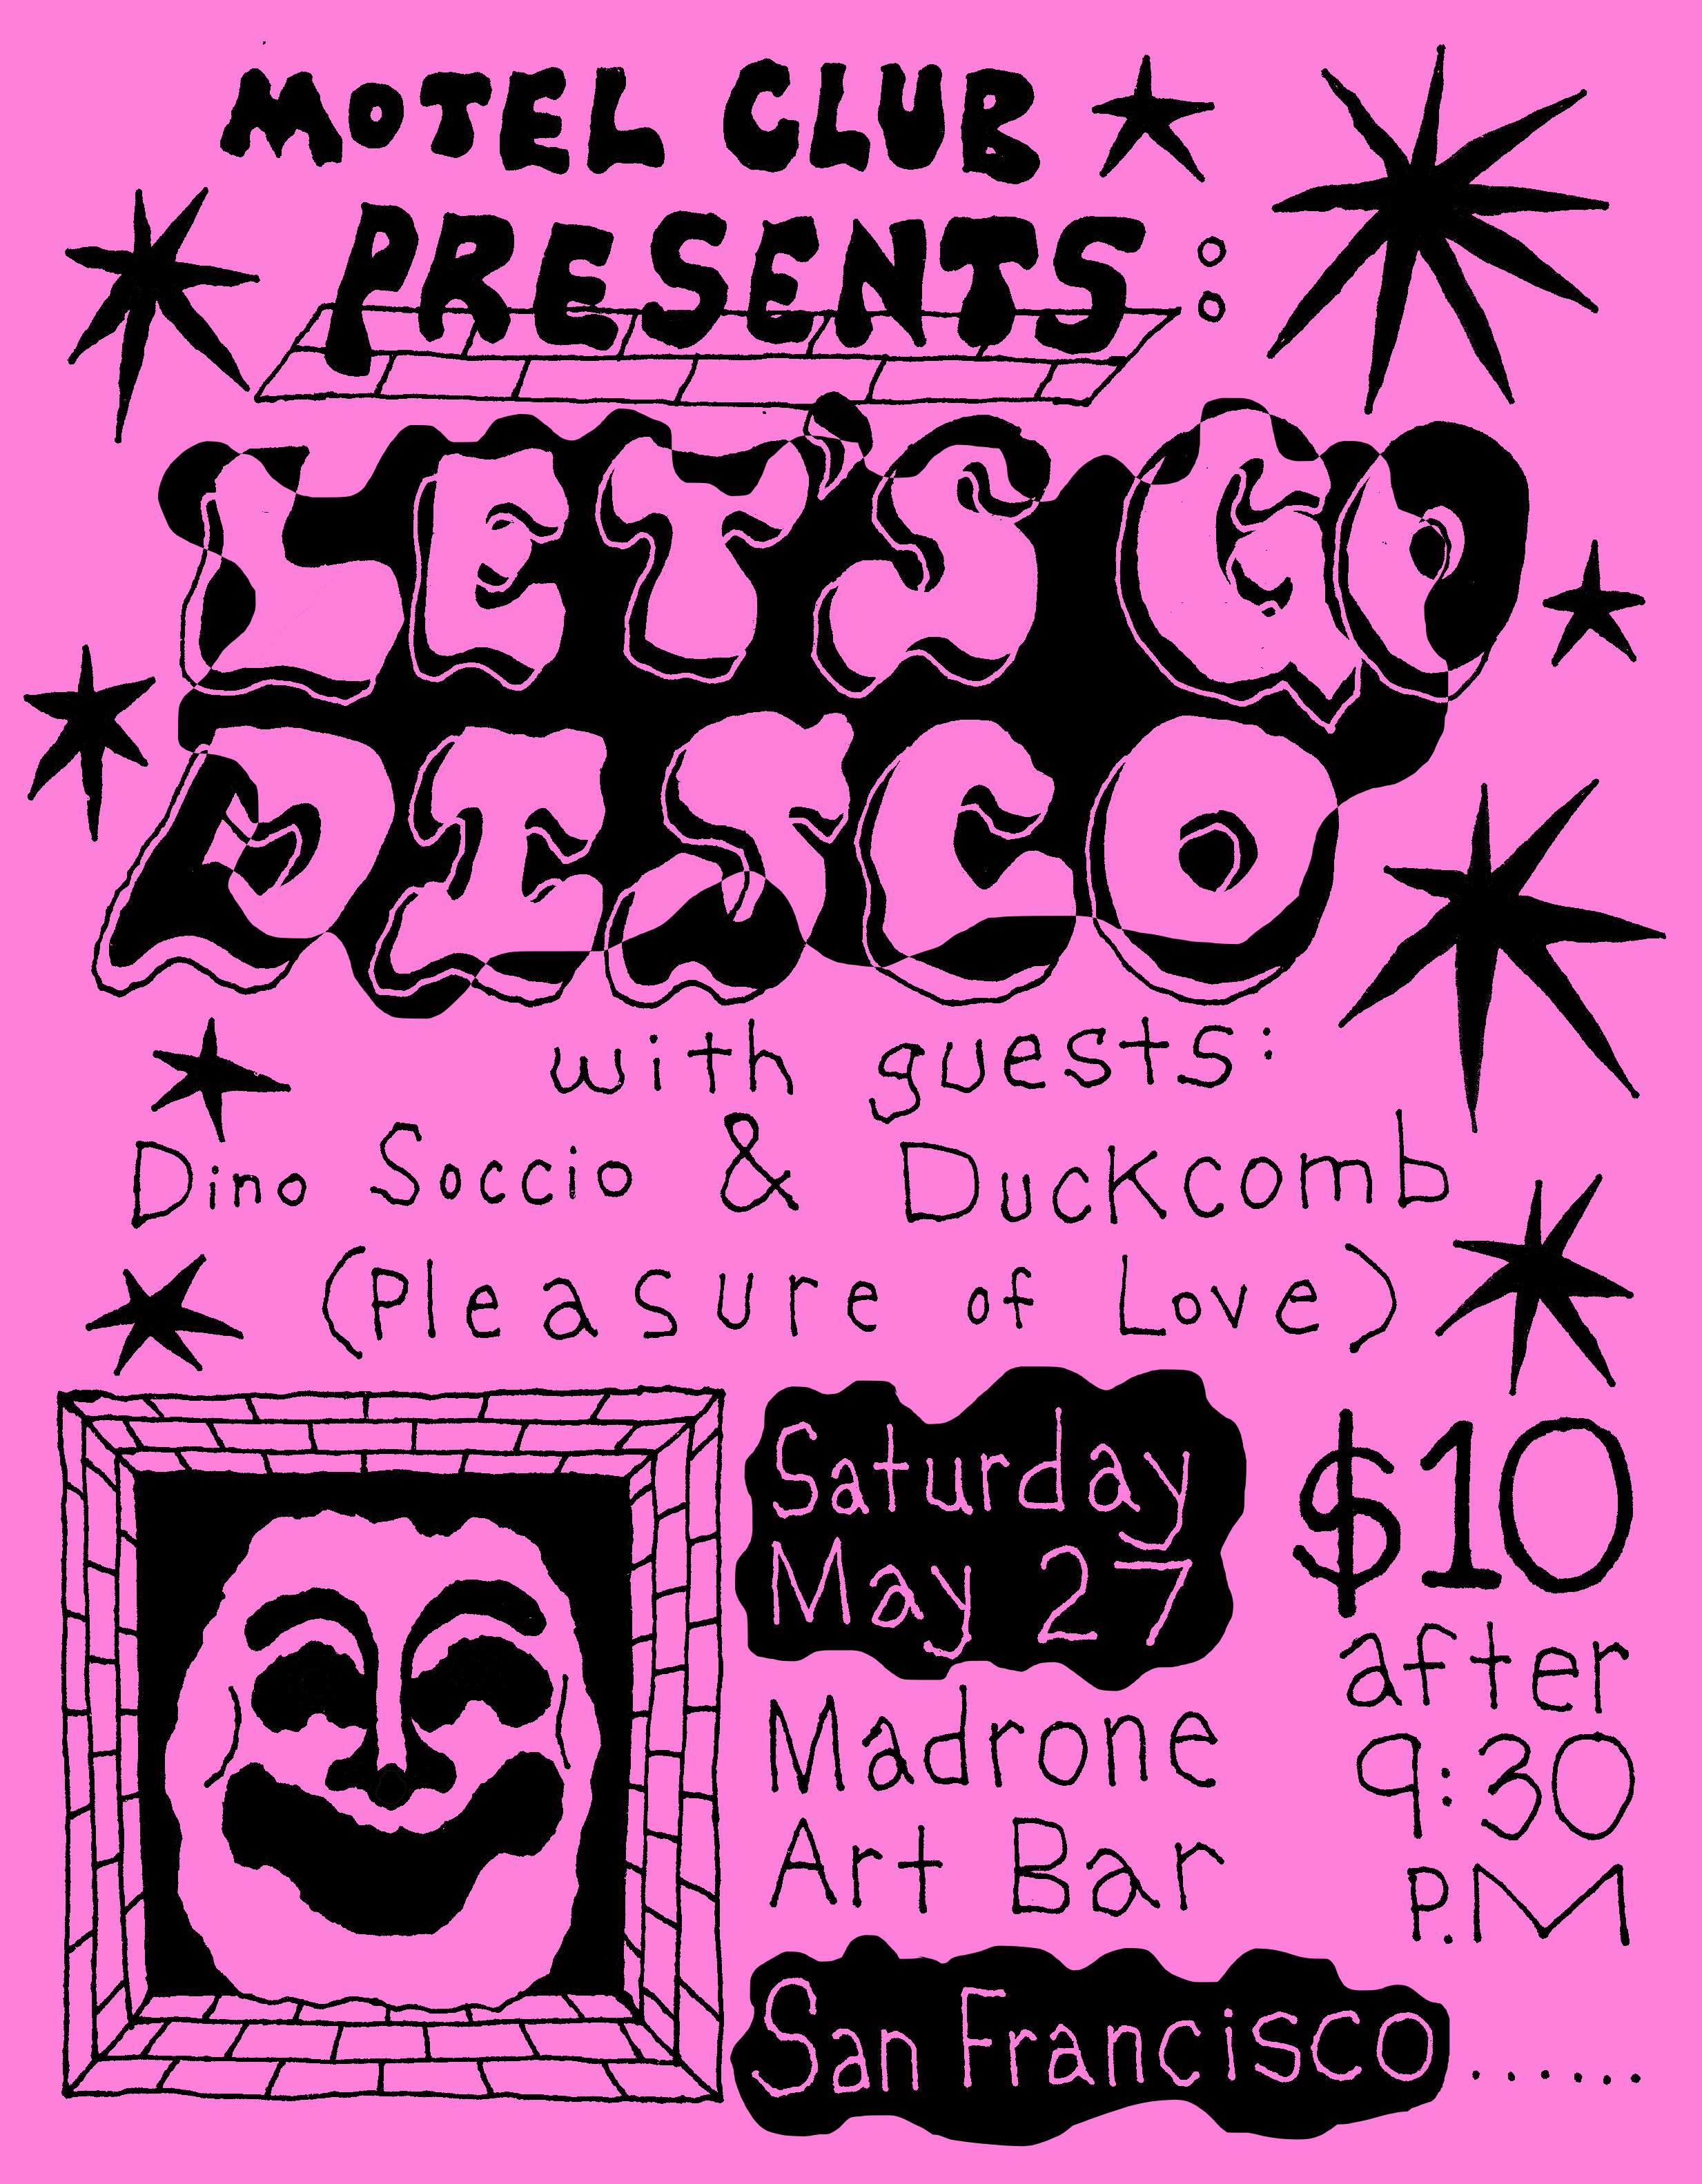 Motel Club presents: Let's Go Disco with Dino Soccio & Duckcomb - Página trasera